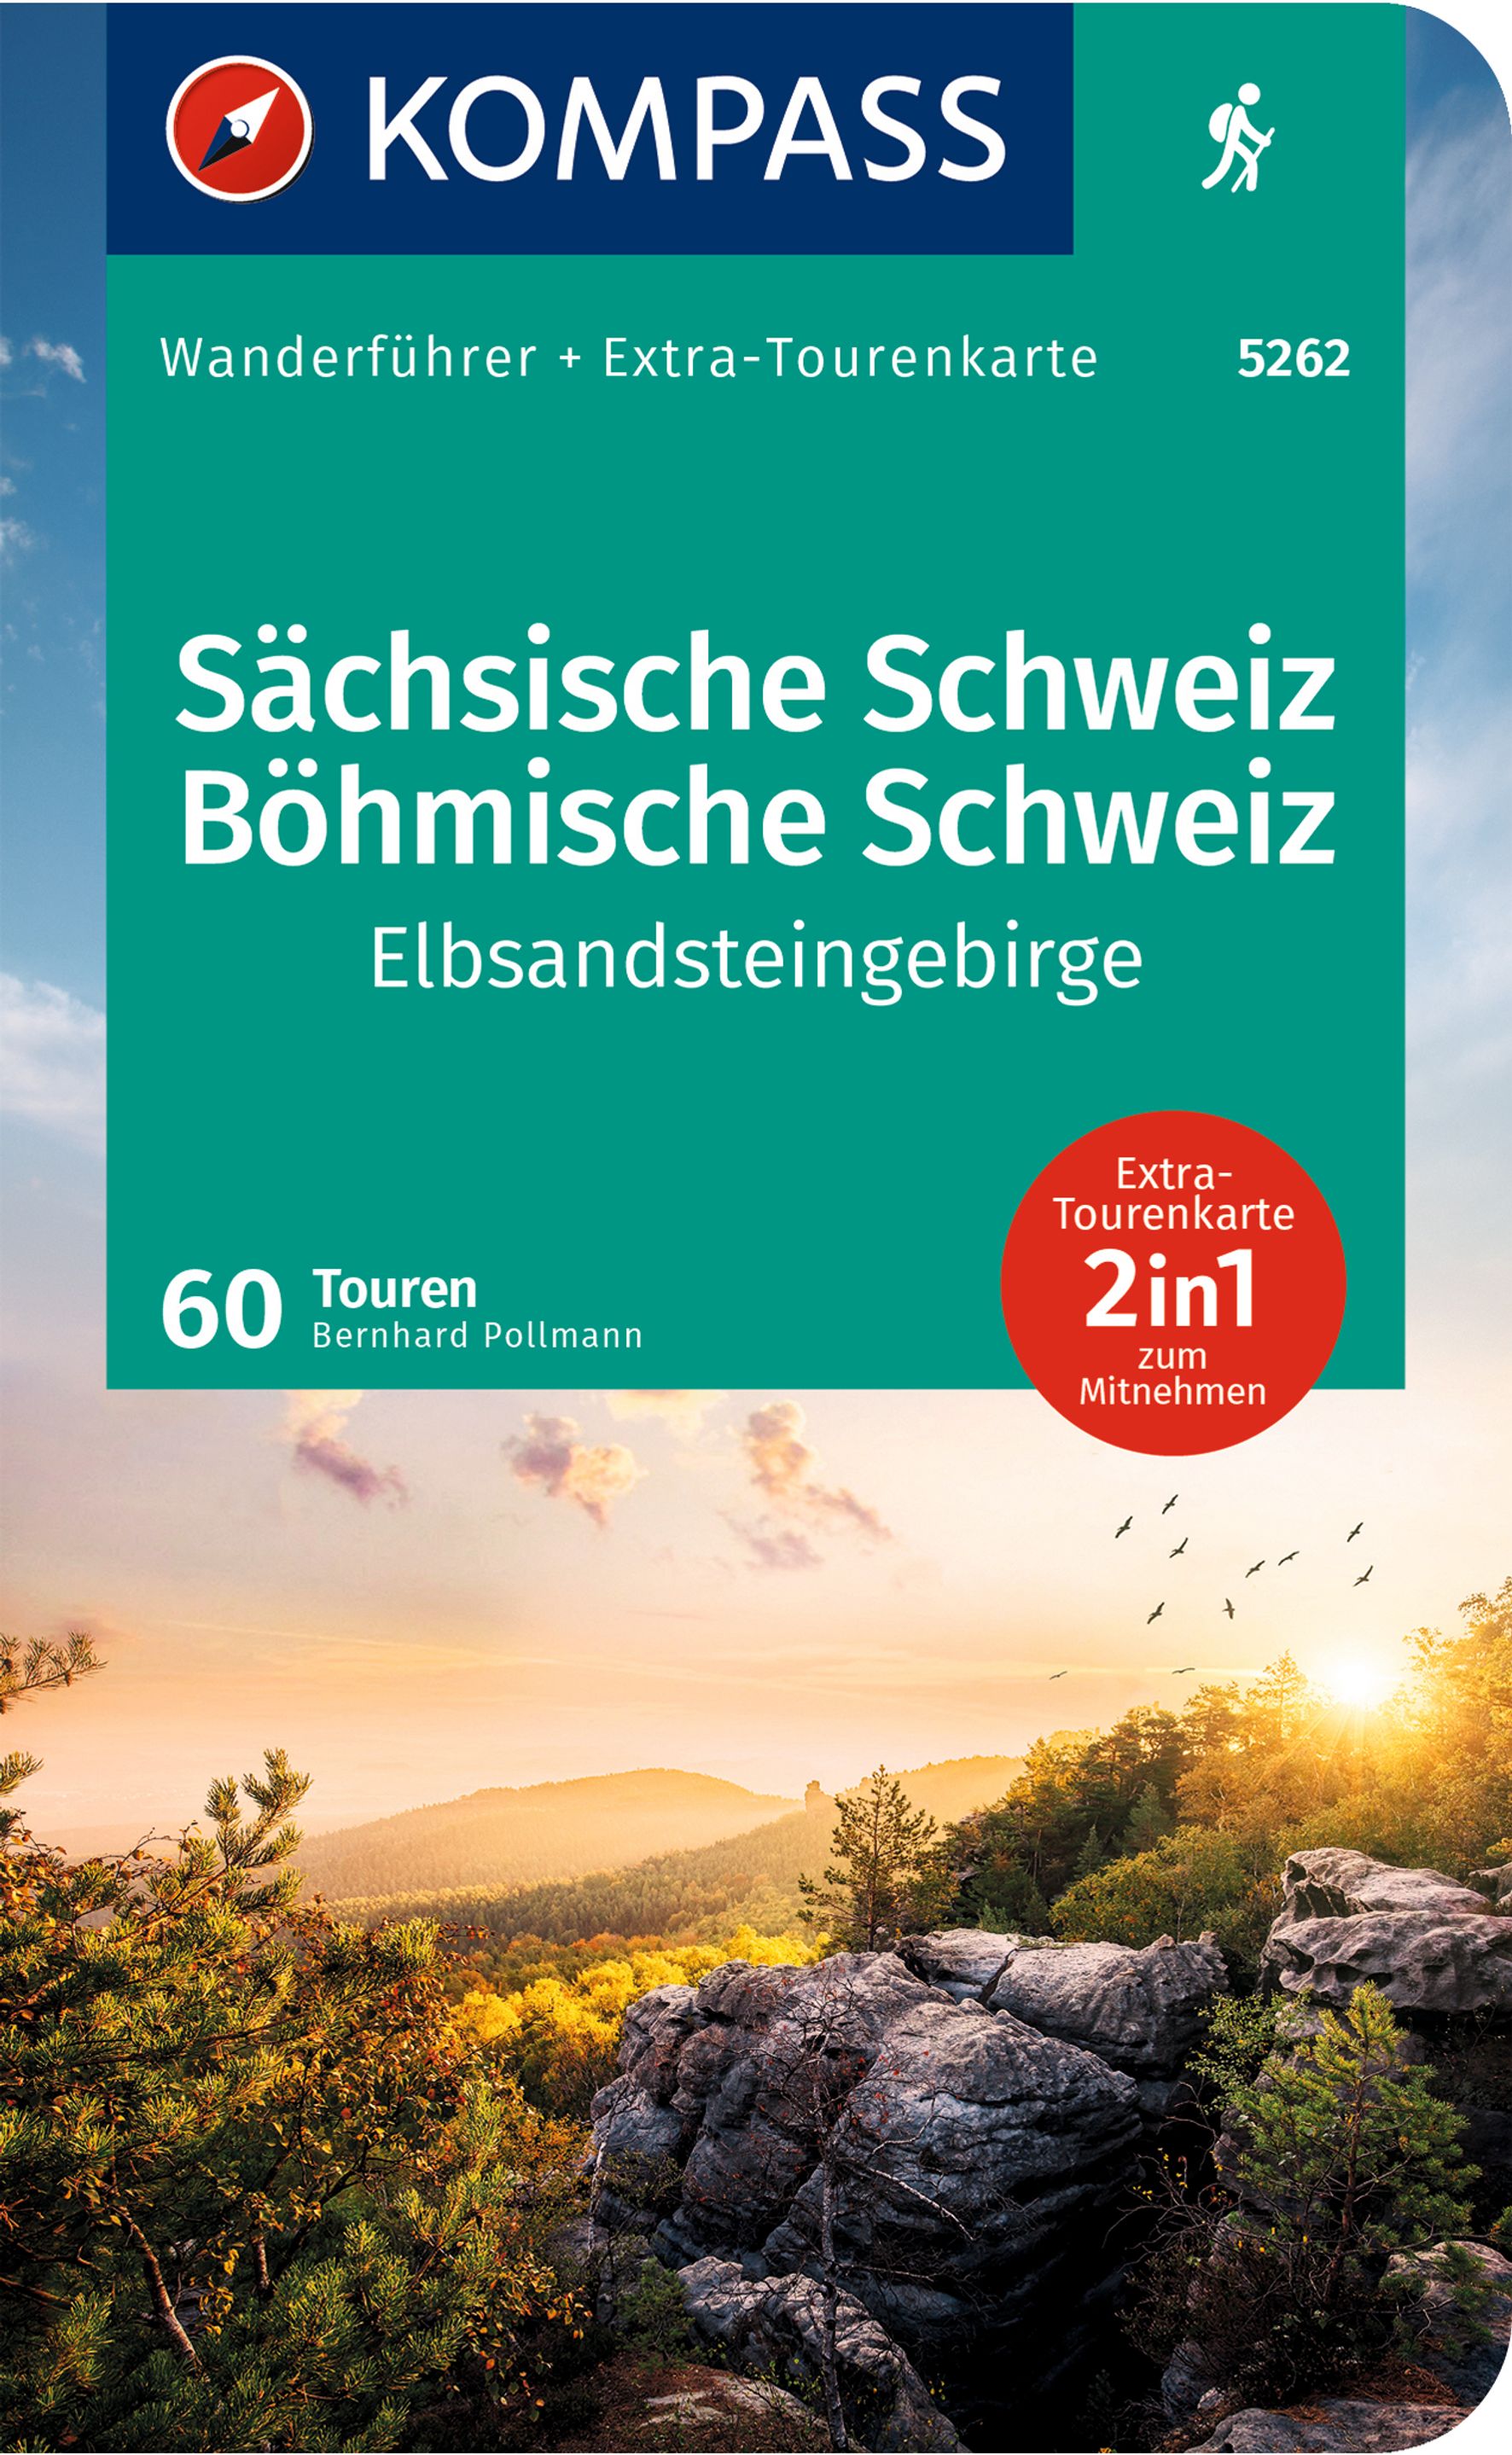 MAIRDUMONT Sächsische Schweiz, Böhmische Schweiz, Elbsandsteingebirge, 60 Touren mit Extra-Tourenkarte